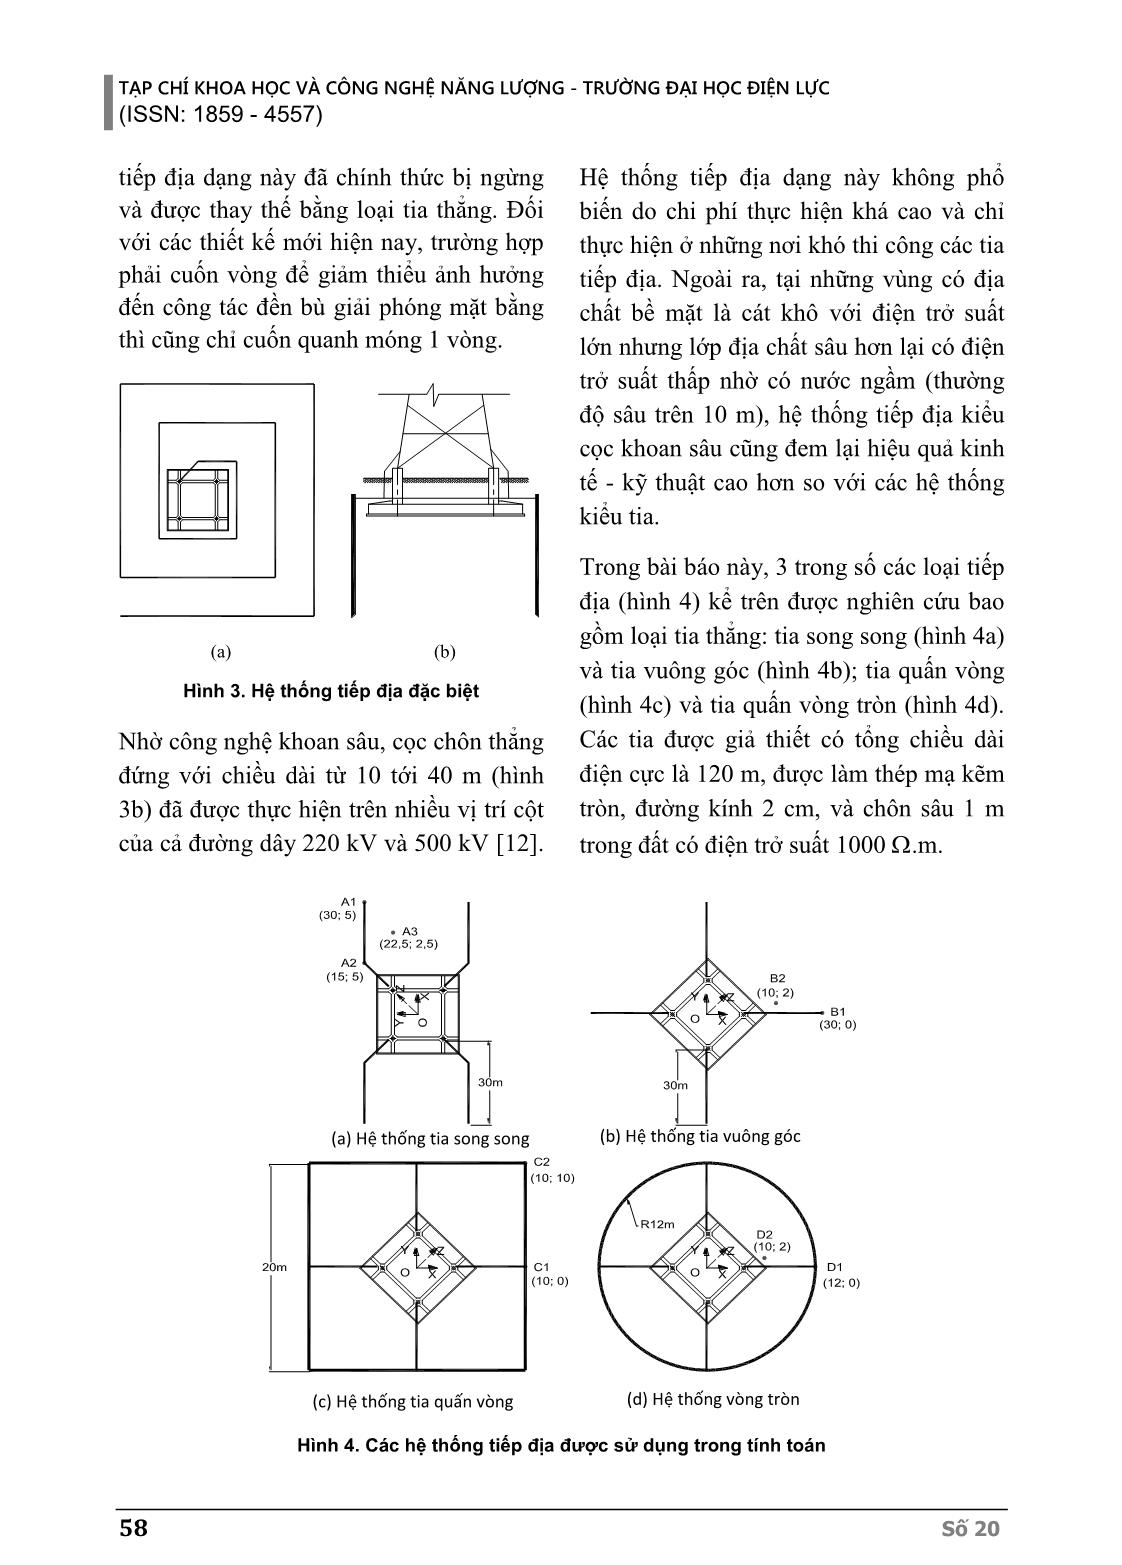 Ảnh hưởng của hình dạng hệ thống nối đất đường dây truyền tải đến điện áp bước và điện áp tiếp xúc khi tản dòng điện sét trang 4